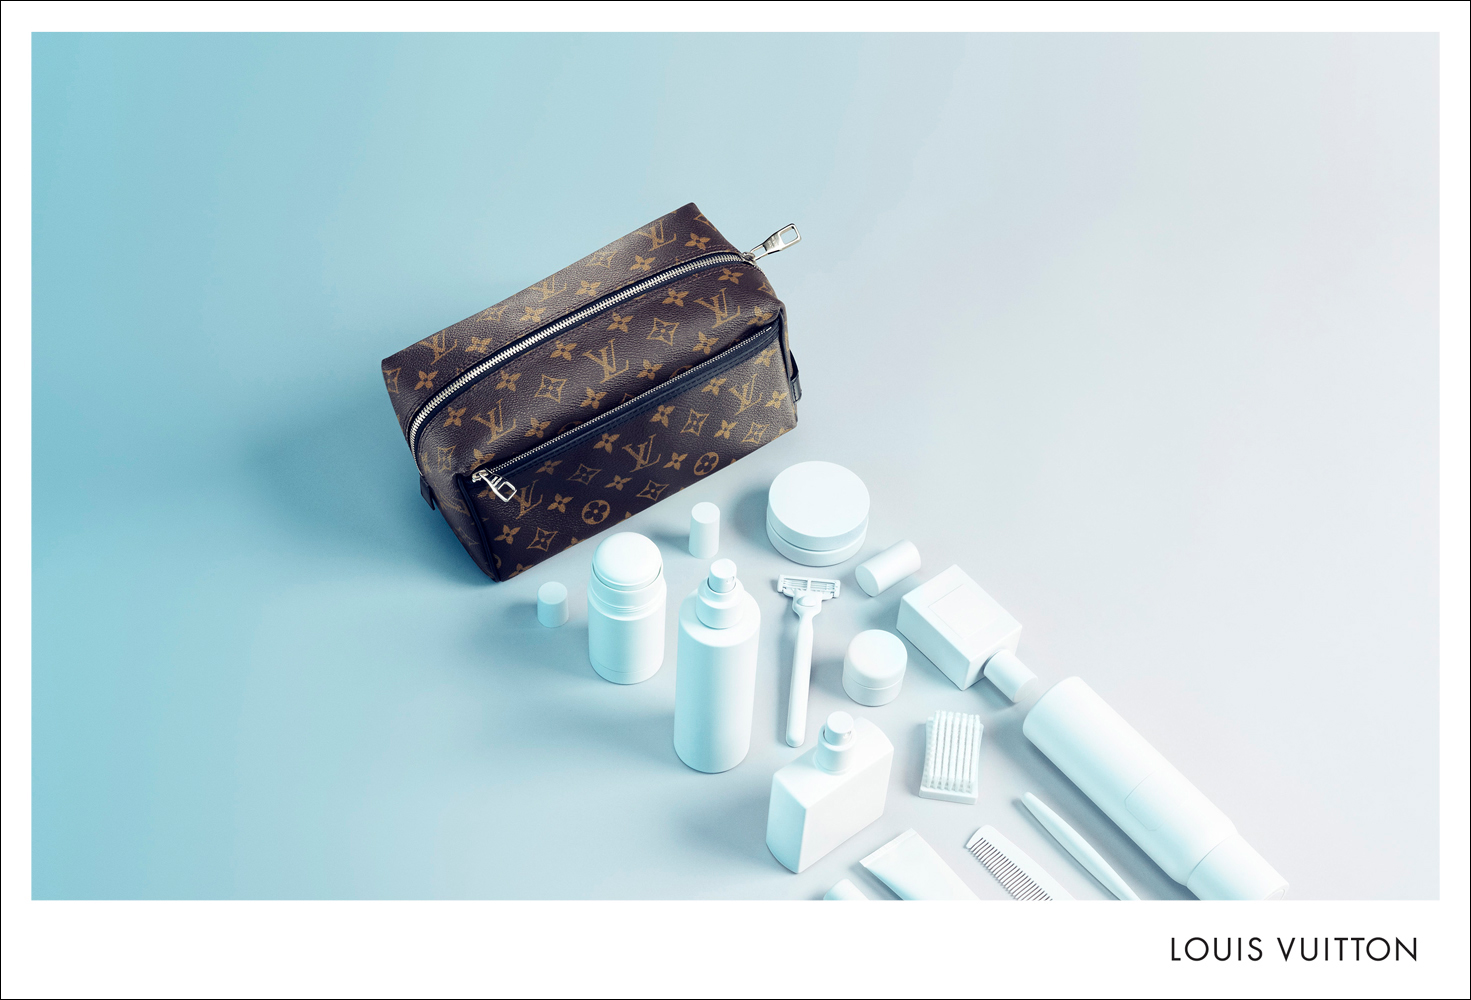 Louis Vuitton / Romin Favre